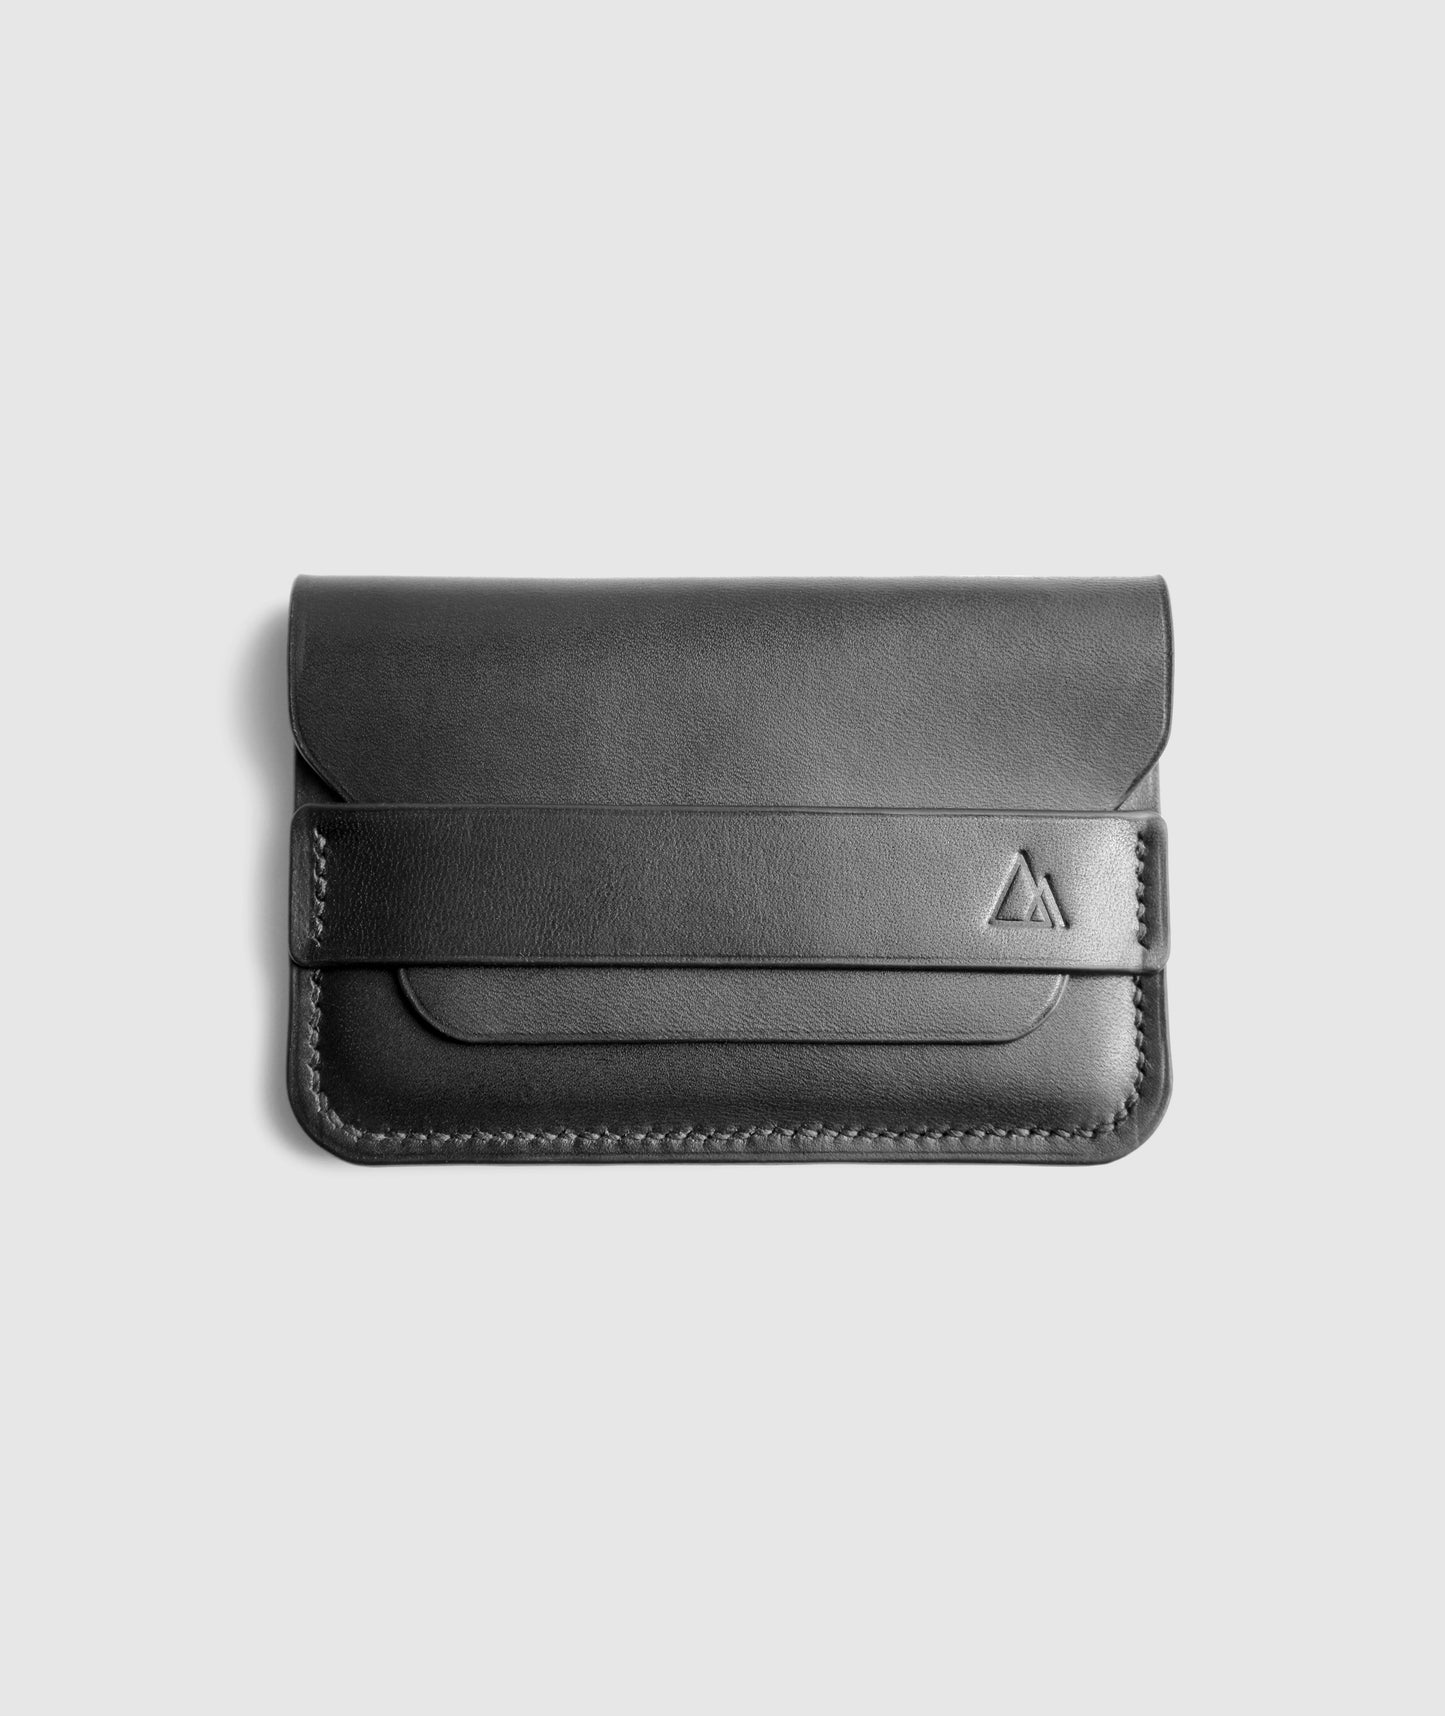 Envelope black leather card holder